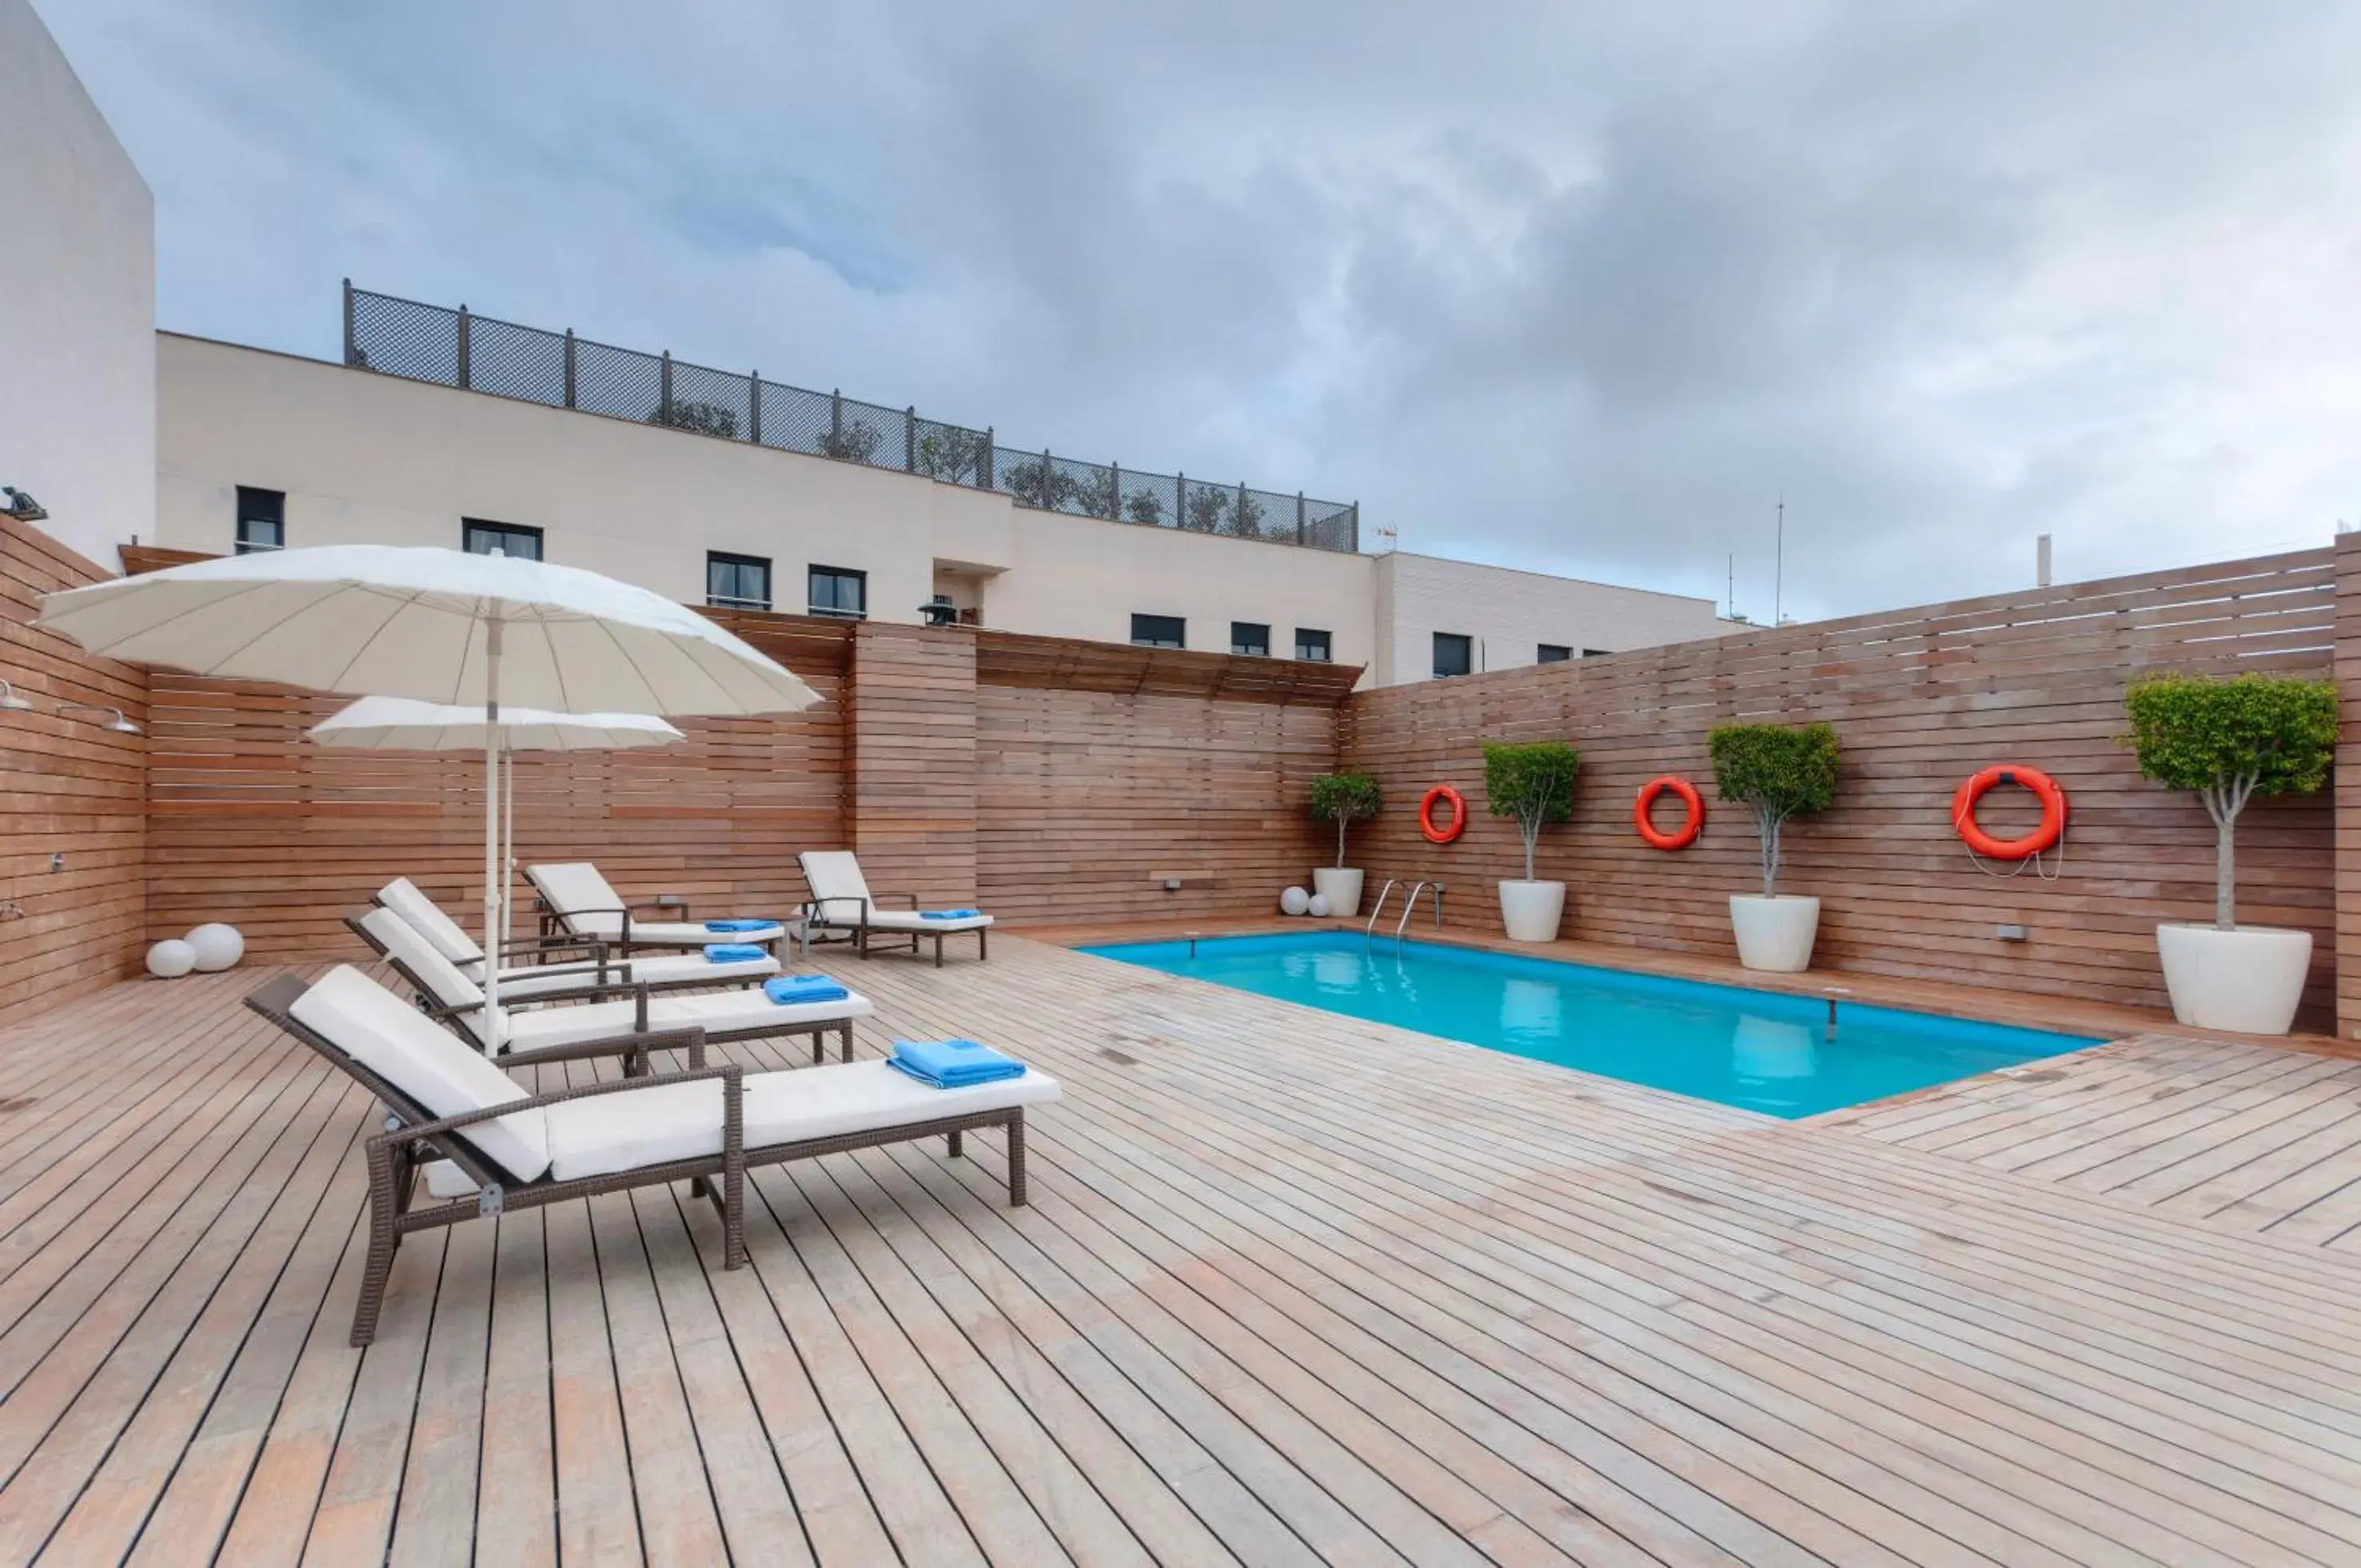 Solarium, Swimming Pool in Hotel Ceuta Puerta de Africa